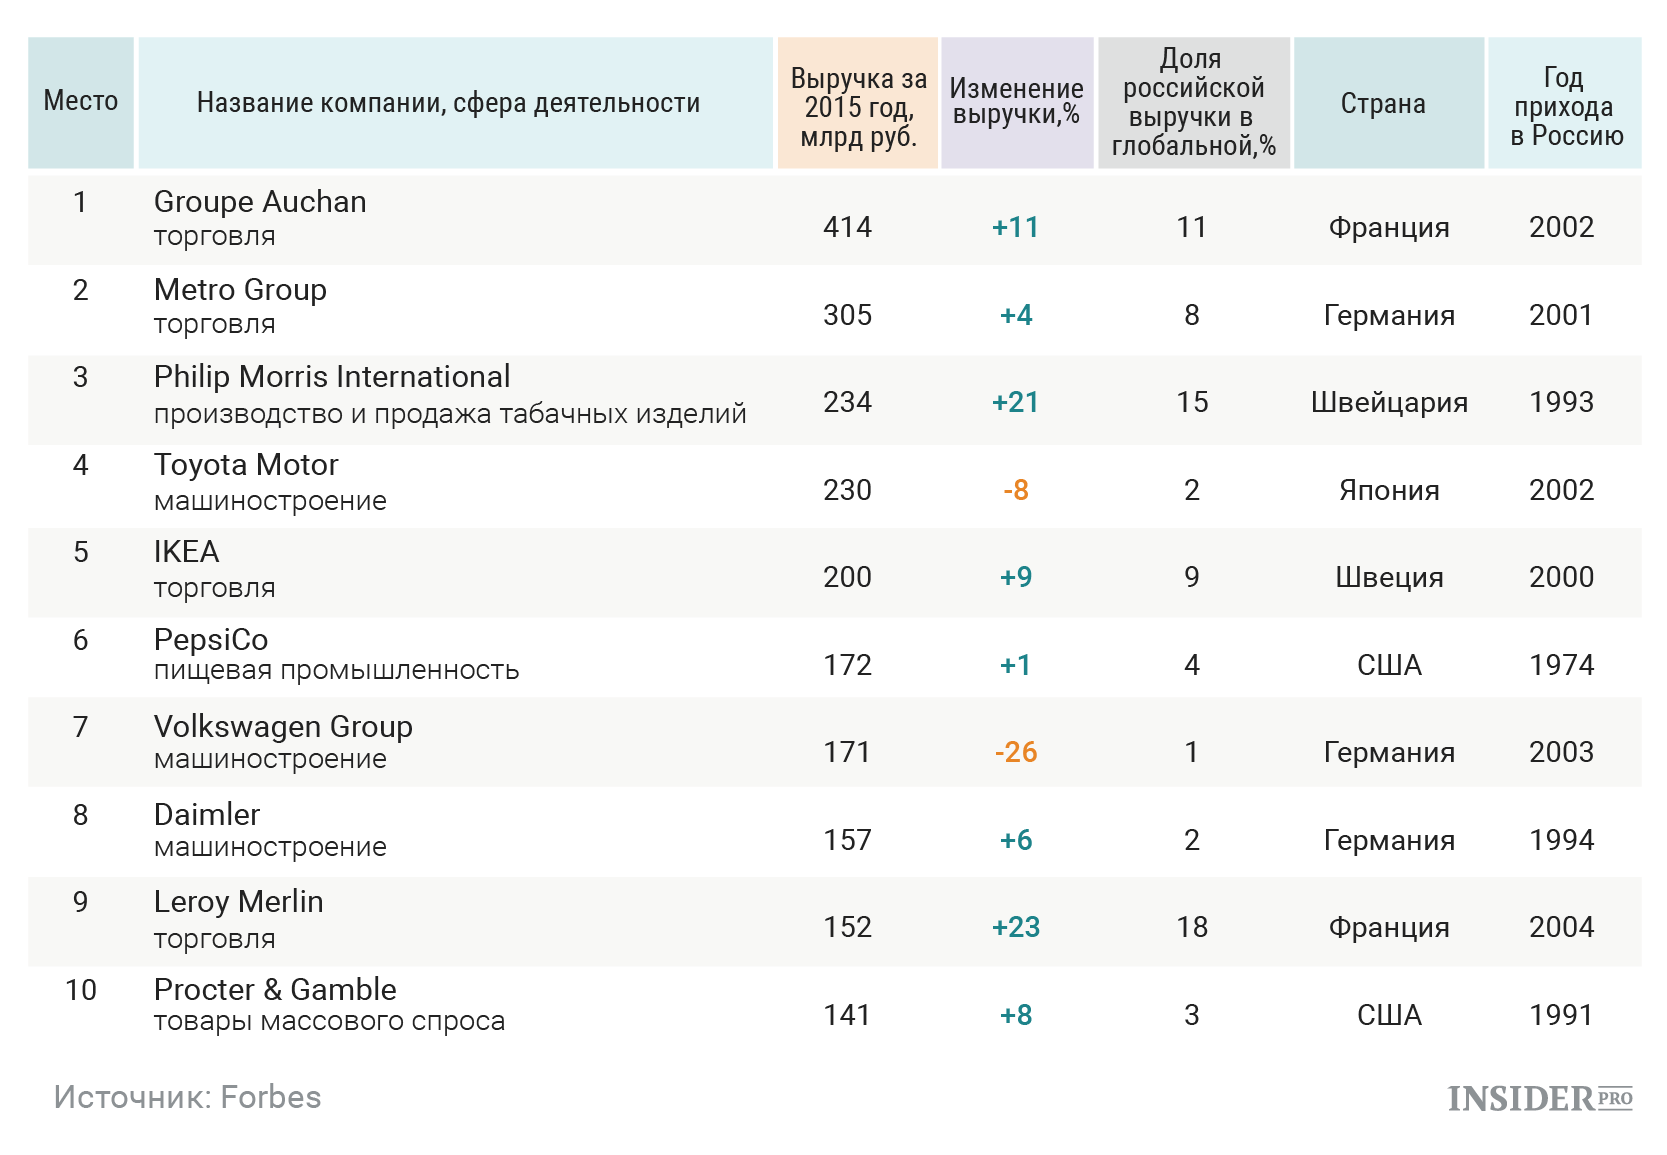 Американские предприятия в России список